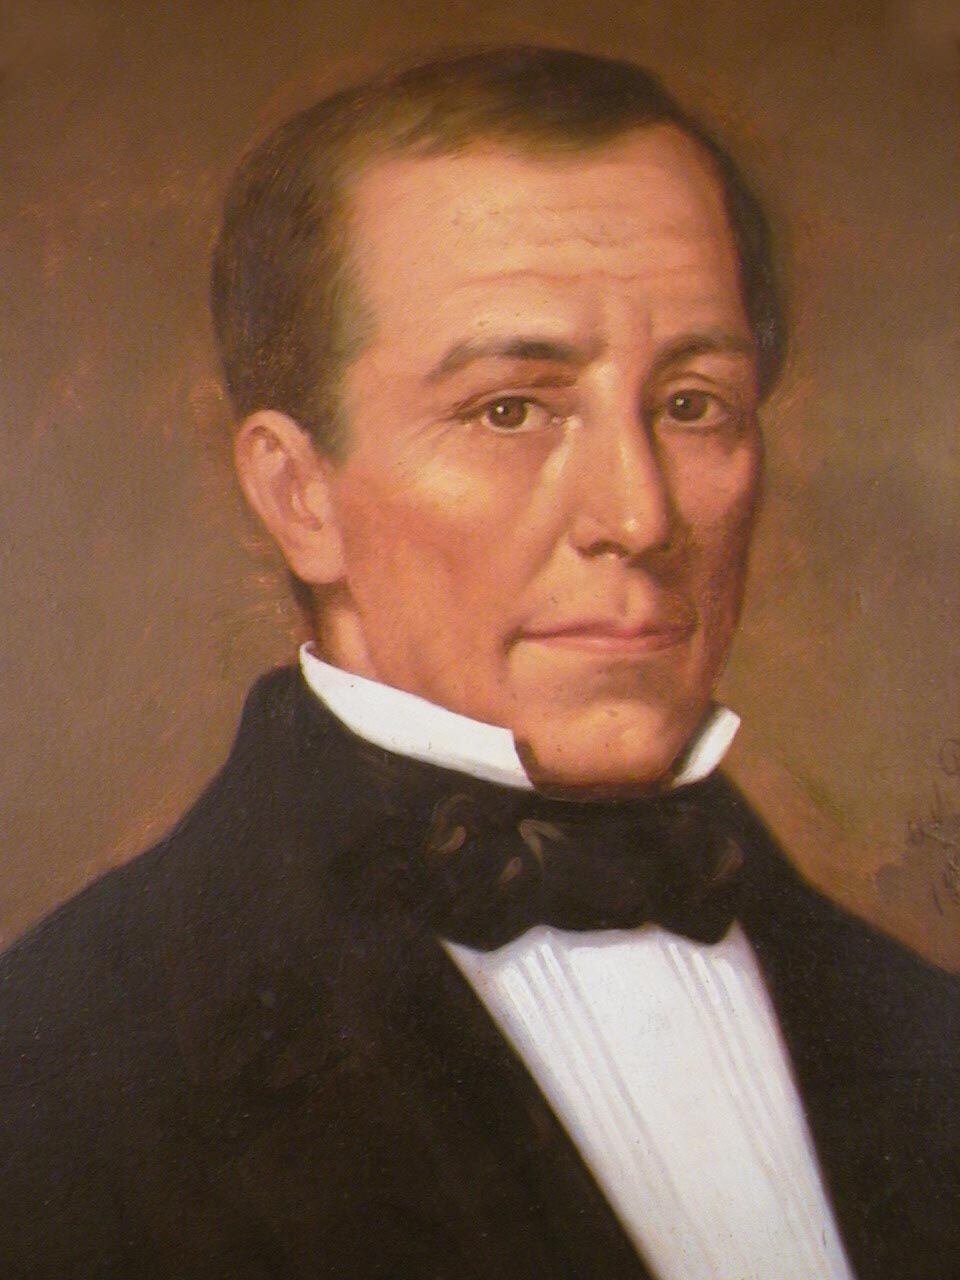 Manuel Aguilar Chacón fue jefe de Estado entre 1837 y 1838. Durante su gestión,  promovió leyes contra la corrupción moral e impulsó la educación pública y la infraestructura vial, entre otras acciones.